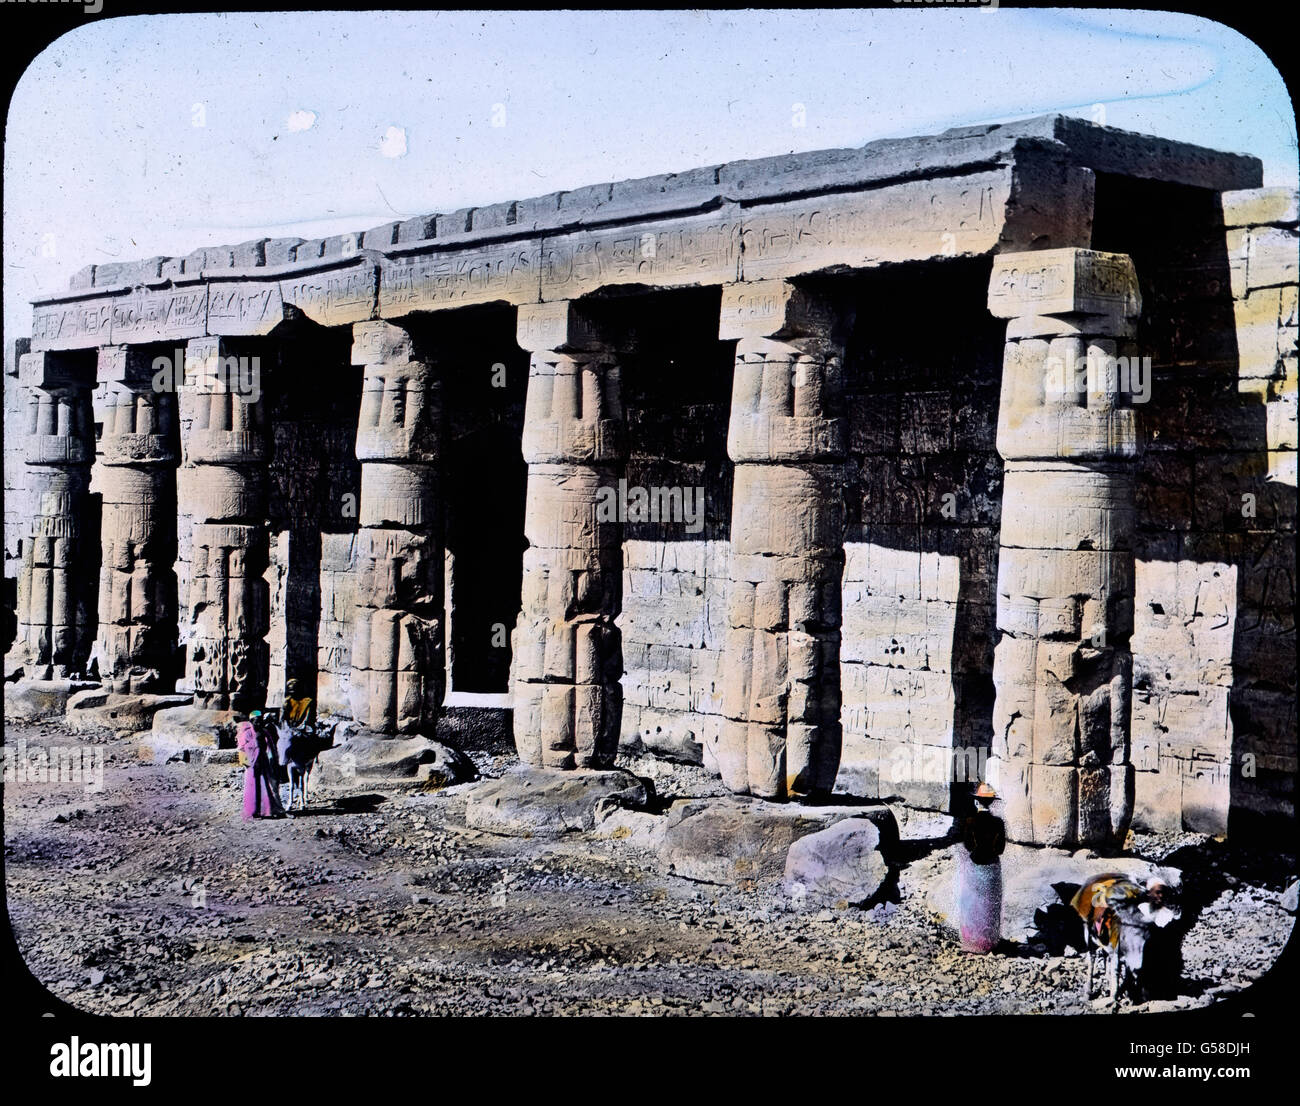 Im Bannbereich der einstigen riesigen Königsstadt liegt jetzt das Dörfchen Kurna. Da finden wir einen Tempel, den der Pharao Sethos I., der Vorgänger des großen Ramses, errichten ließ. Uns interessiert hauptsächlich die Front des Heiligtums, dessen Vorhöfe und Pylonen verschwunden sind und Wir freuen uns un dem säulengetragenen kräftigen Portikus. Es waren ehemals 10 Säulen, jetzt sind es noch acht, aber wohlerhaltene Papyrusbündel, ältesten, darum einfachsten Stils mit Knospenkapitell, die die trugen Deckenbalken. Hinter ihnen öffnen sich drei Türen zu dem eigentlichen, den Göttinnen Mut und Foto Stock